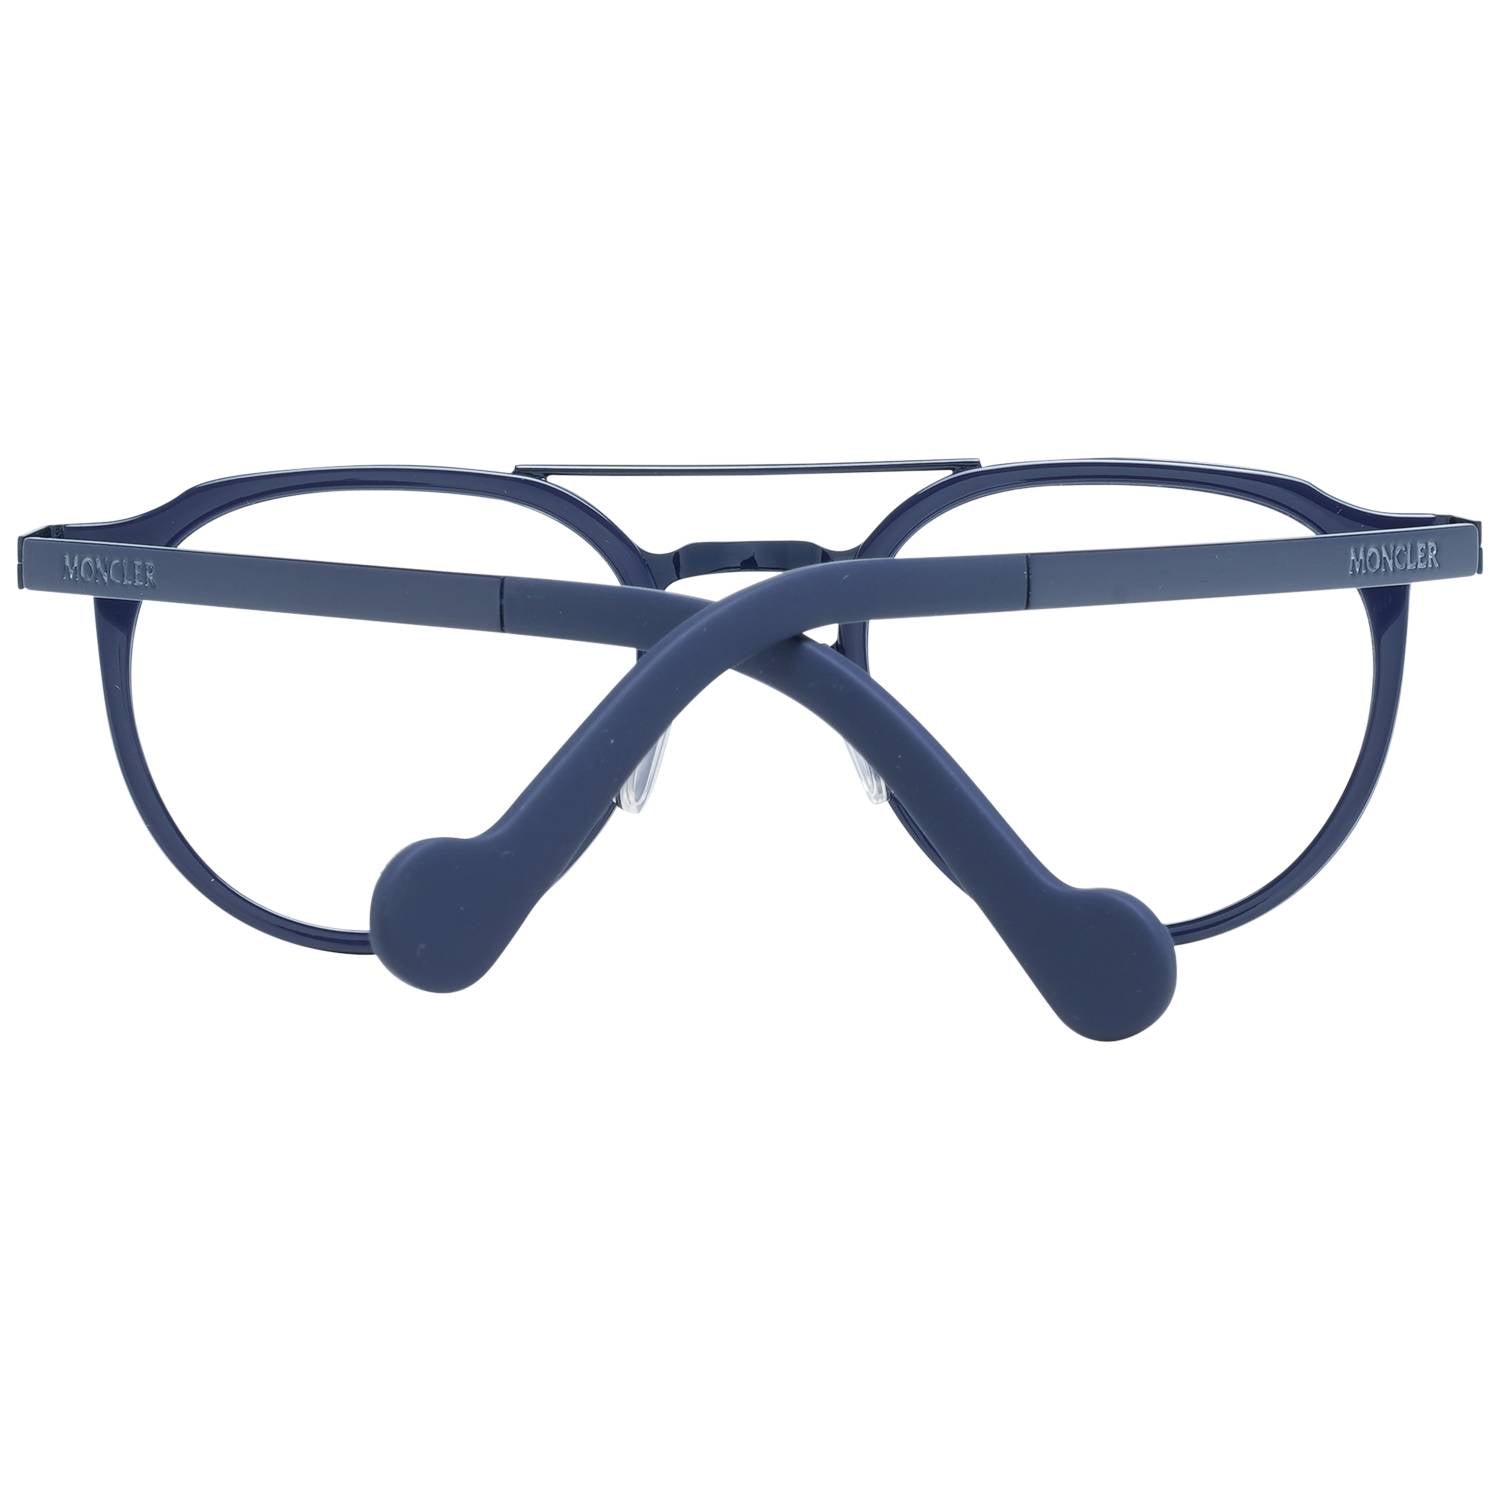 Moncler Eyeglasses Moncler Glasses Frames ML5036 090 49mm Eyeglasses Eyewear UK USA Australia 